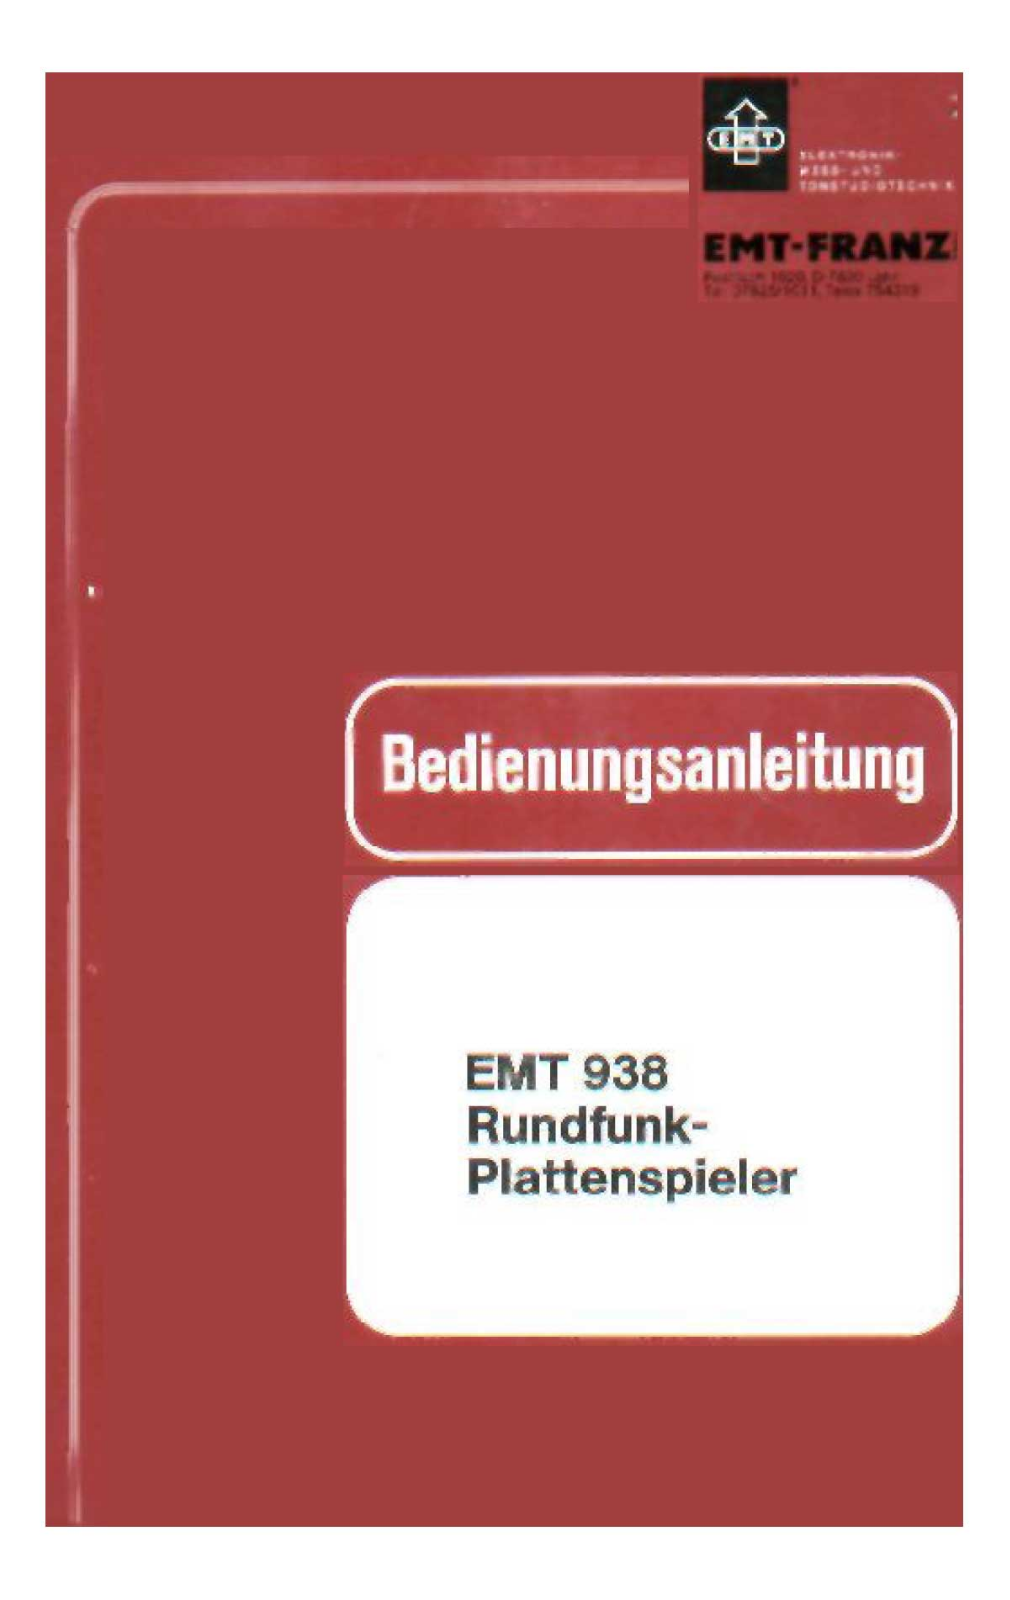 EMT 938 Service manual